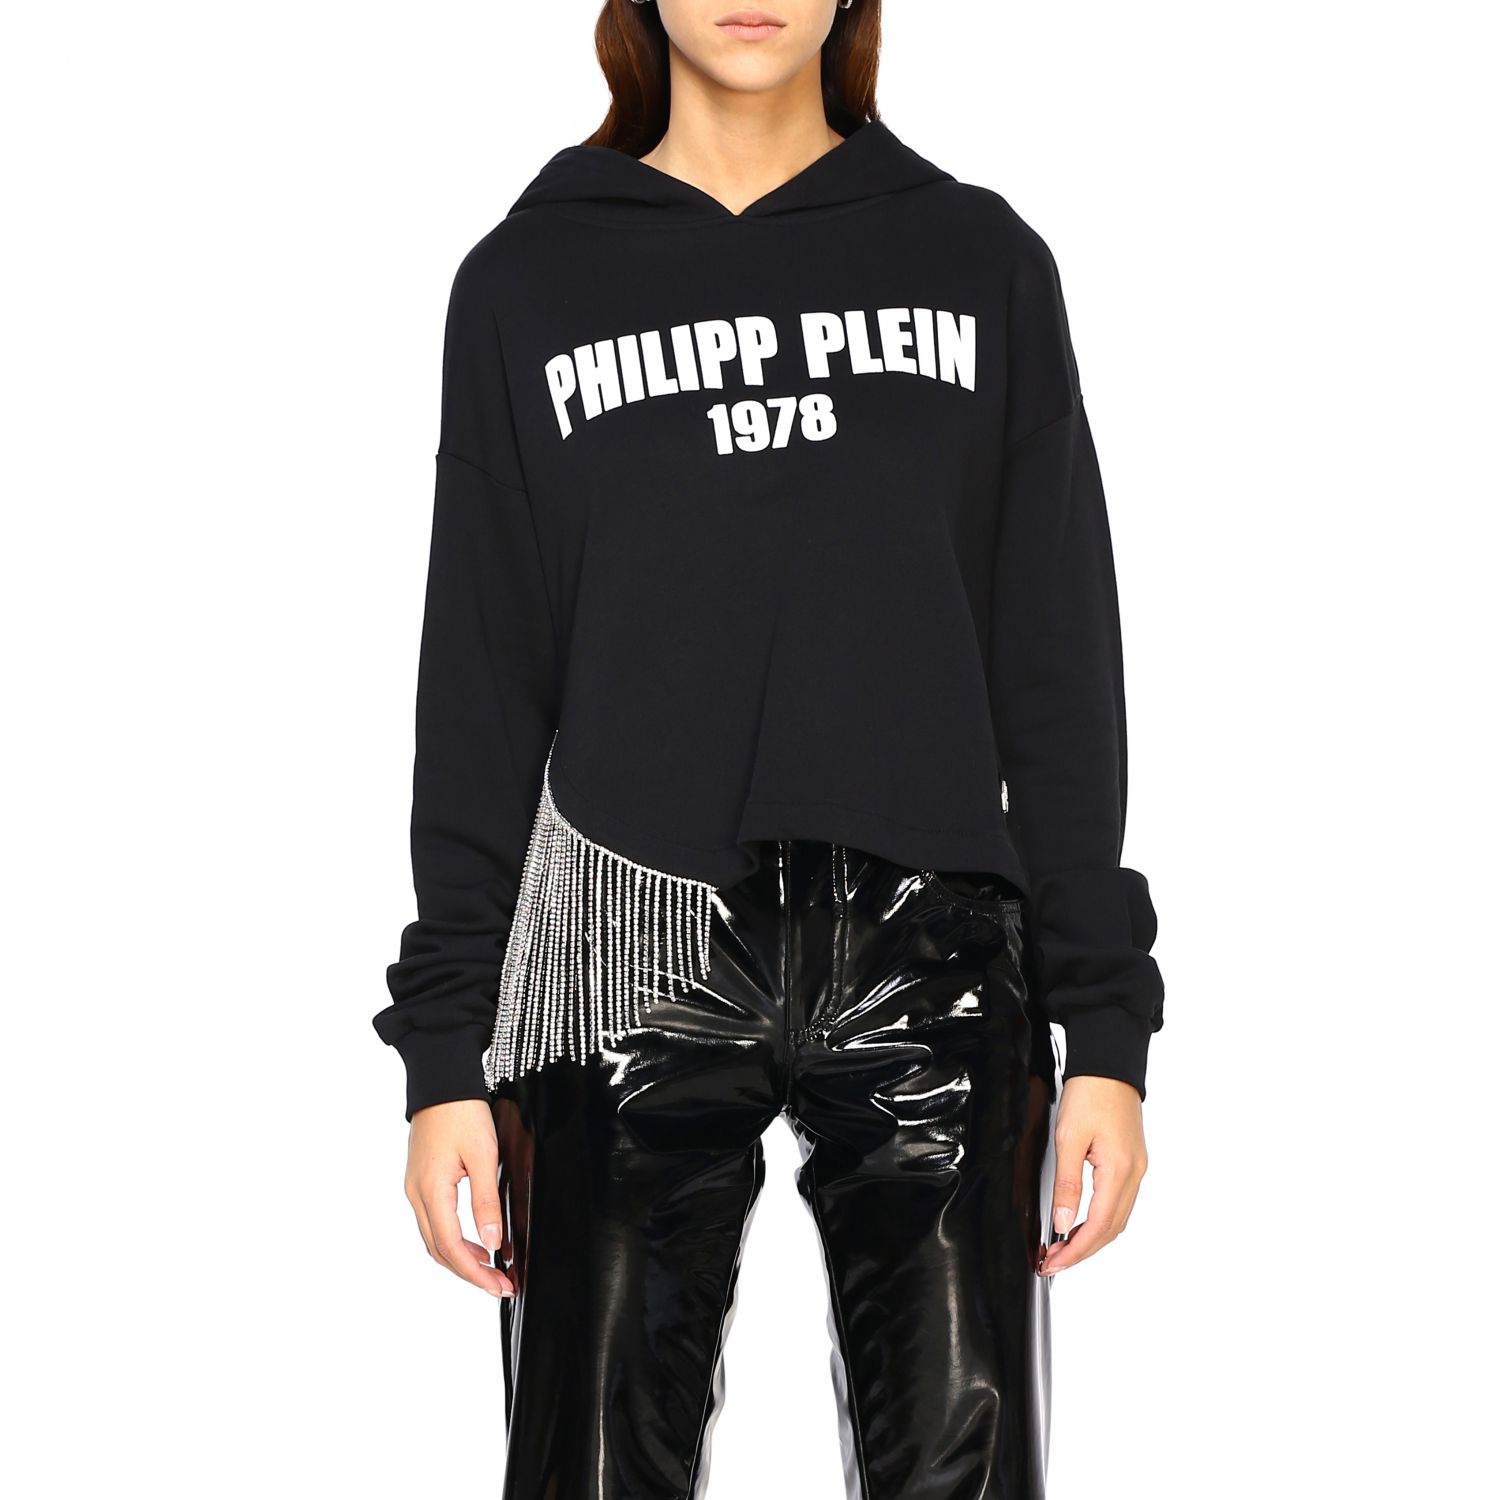 Femme Vêtements Articles de sport et dentraînement Sweats Sweat-shirt Coton Philipp Plein en coloris Noir 